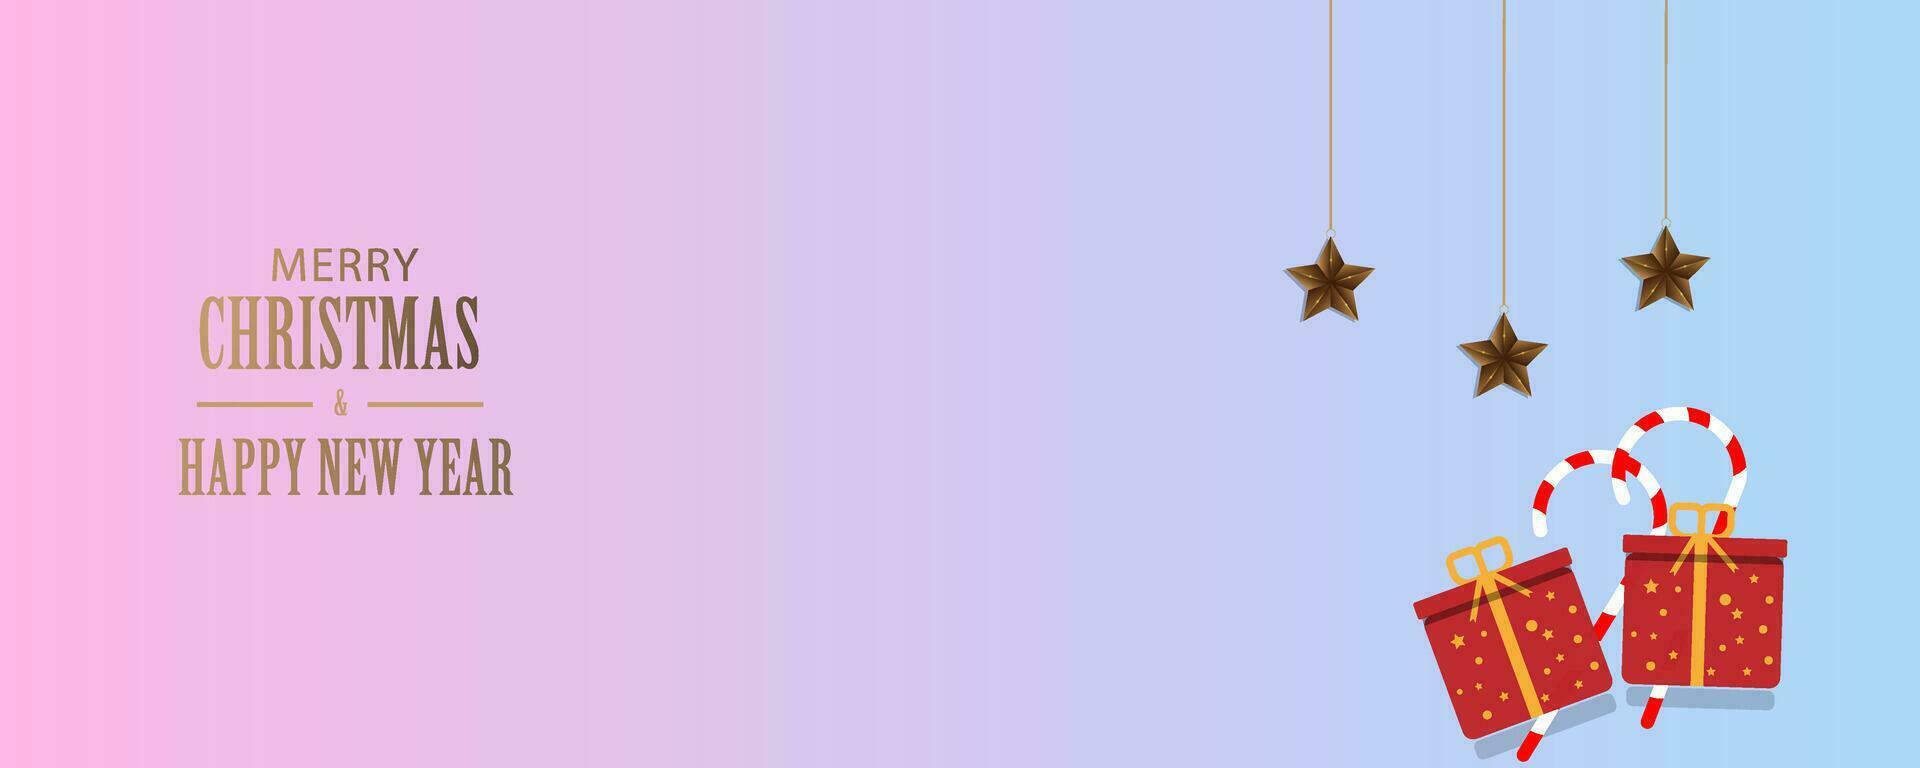 fröhlich Weihnachten und glücklich Neu Jahr. horizontal Vorlage kreativ Design im hell Farben mit Geschenk Kisten und Süßigkeiten Stöcke, Sterne. geeignet zum Poster, Flyer, Abdeckungen, Banner, Broschüren vektor